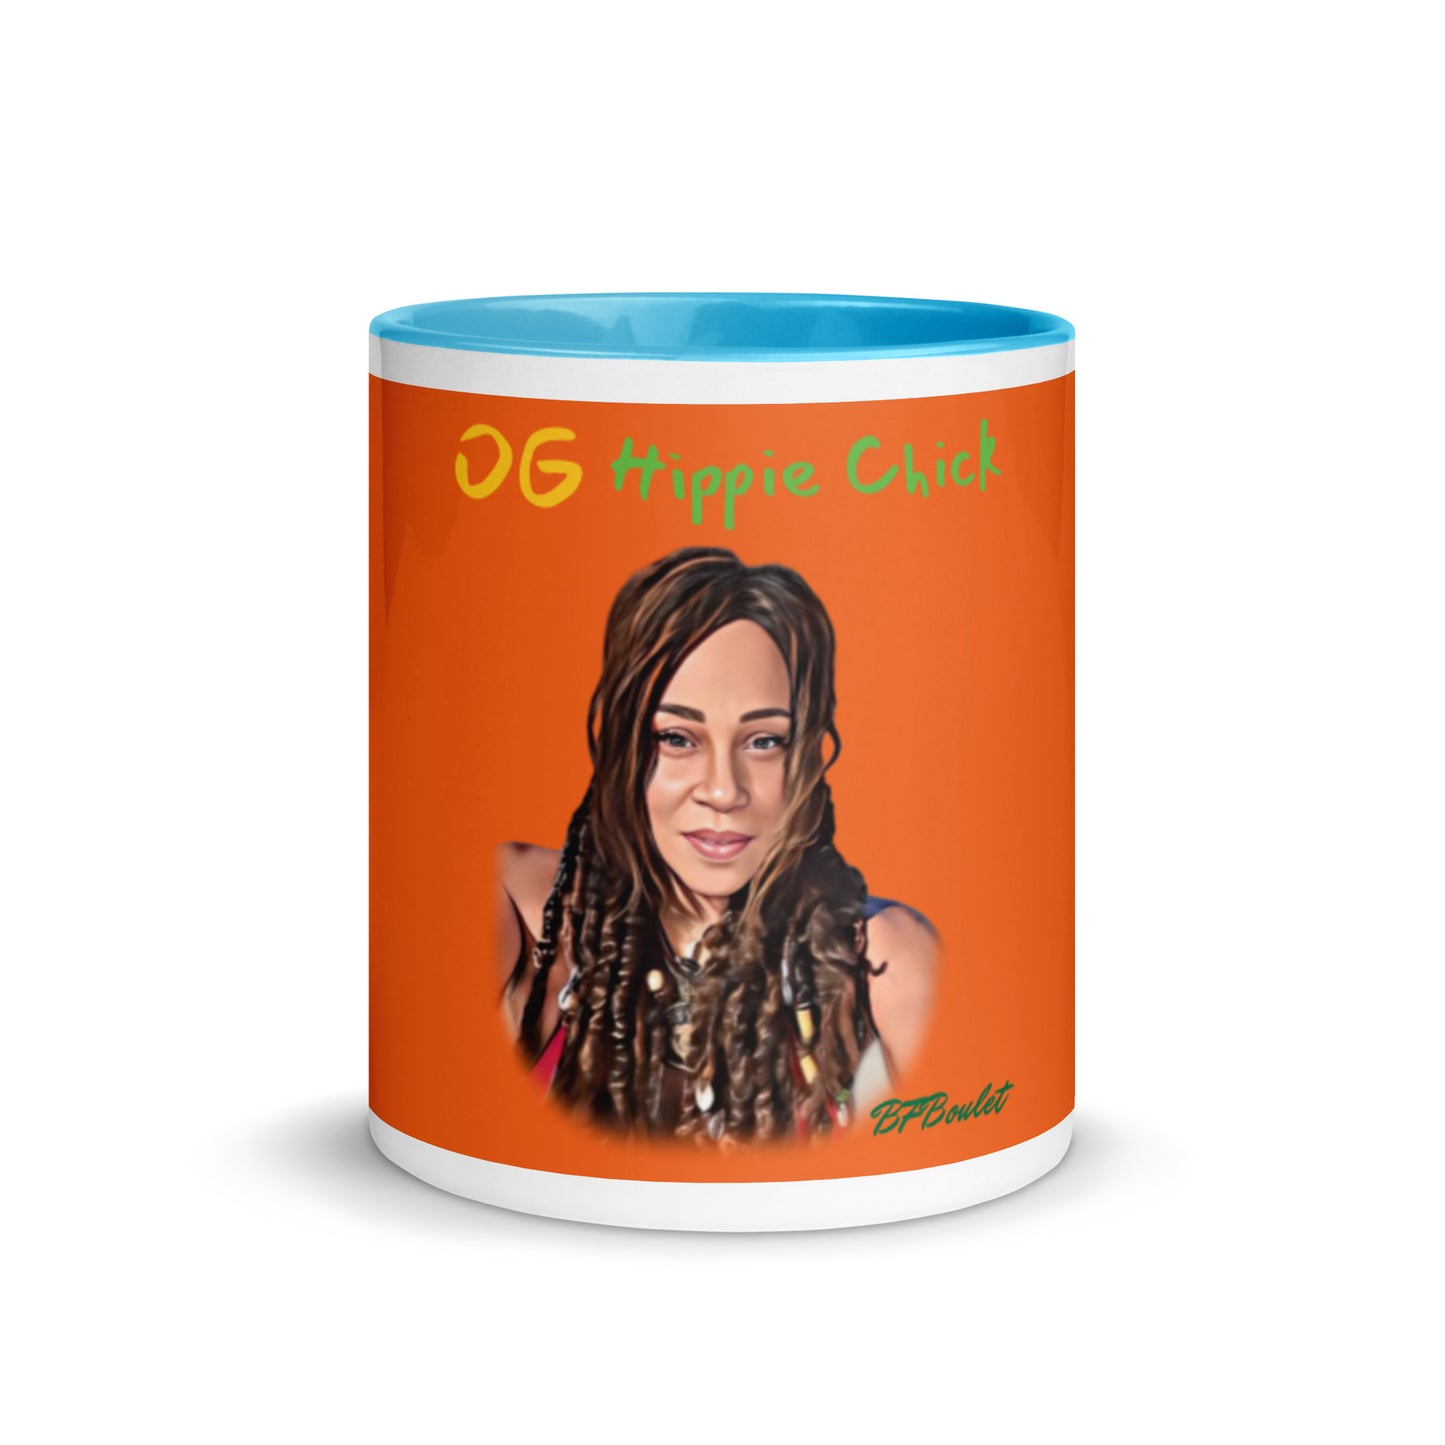 Mug Couleur Orange - OG Hippie Chick (BFBoulet)